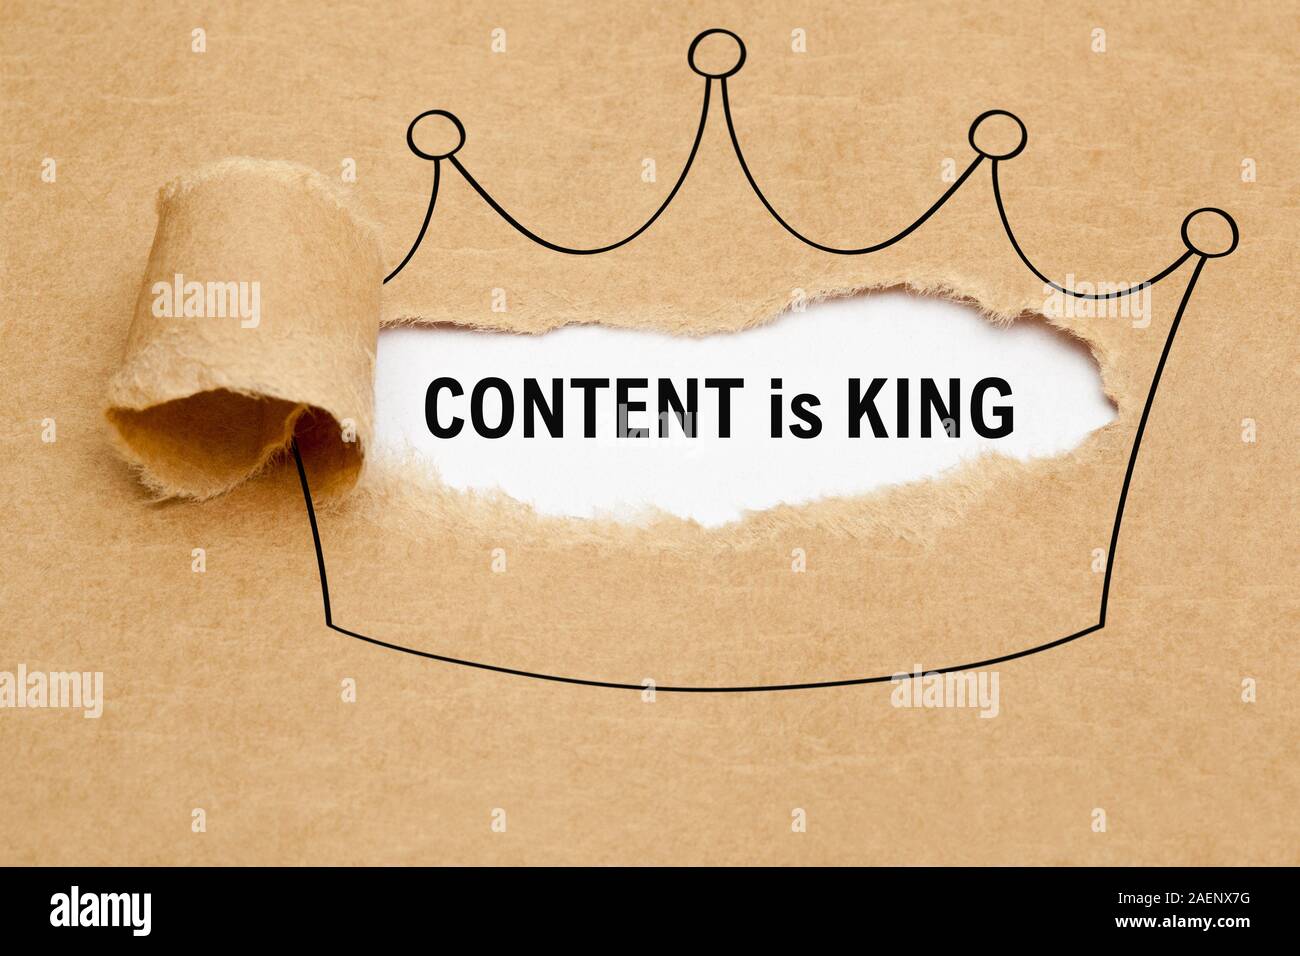 Le contenu est roi texte apparaître derrière déchiré en papier brun dimensions de la couronne. Concept a propos de l'importance du contenu dans le marketing d'internet. Banque D'Images